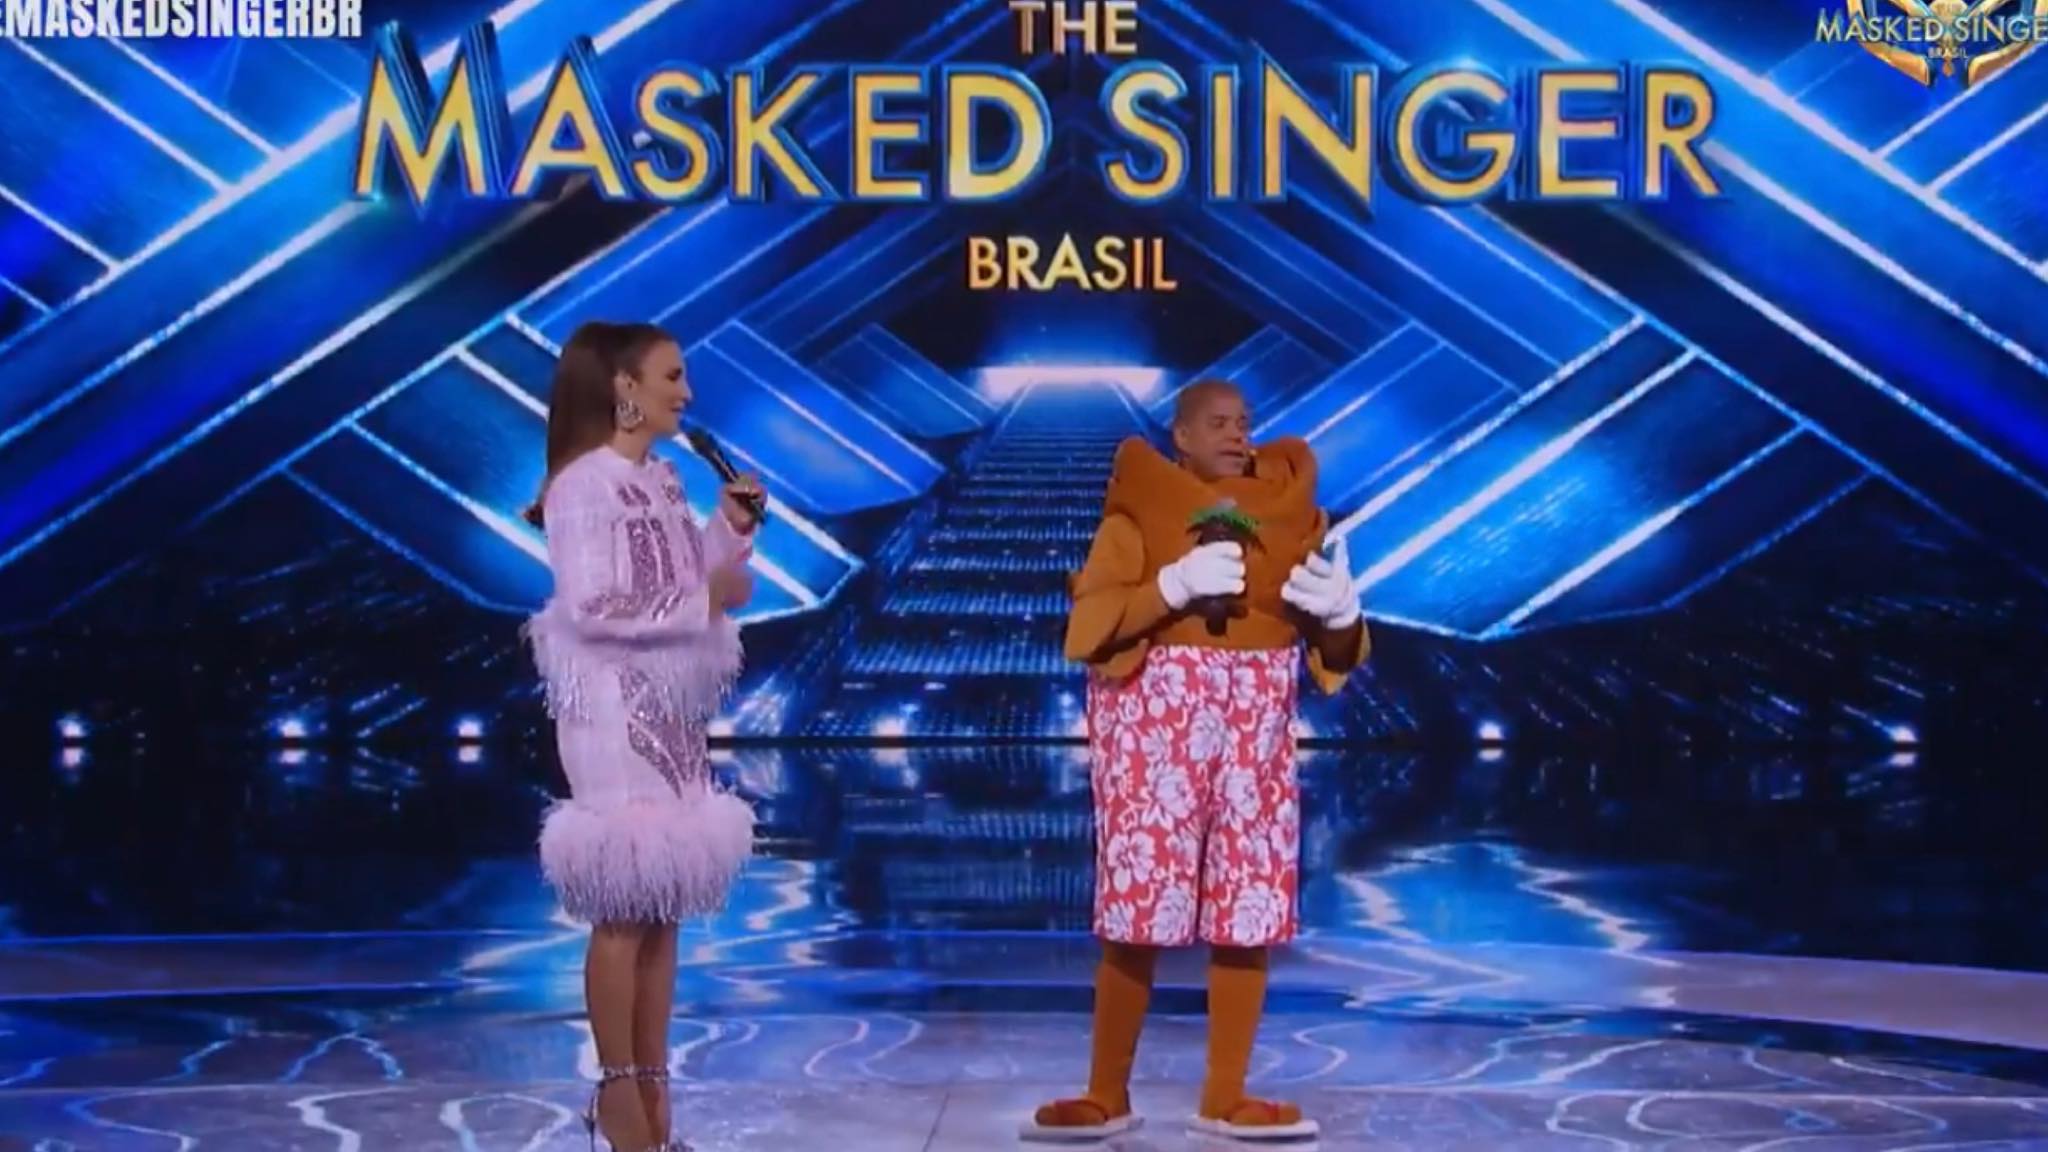 Ivete Sangalo conversa com o Coqueiro, Marcelinho Carioca, no The Masked Singer Brasil. Fonte: Reprodução